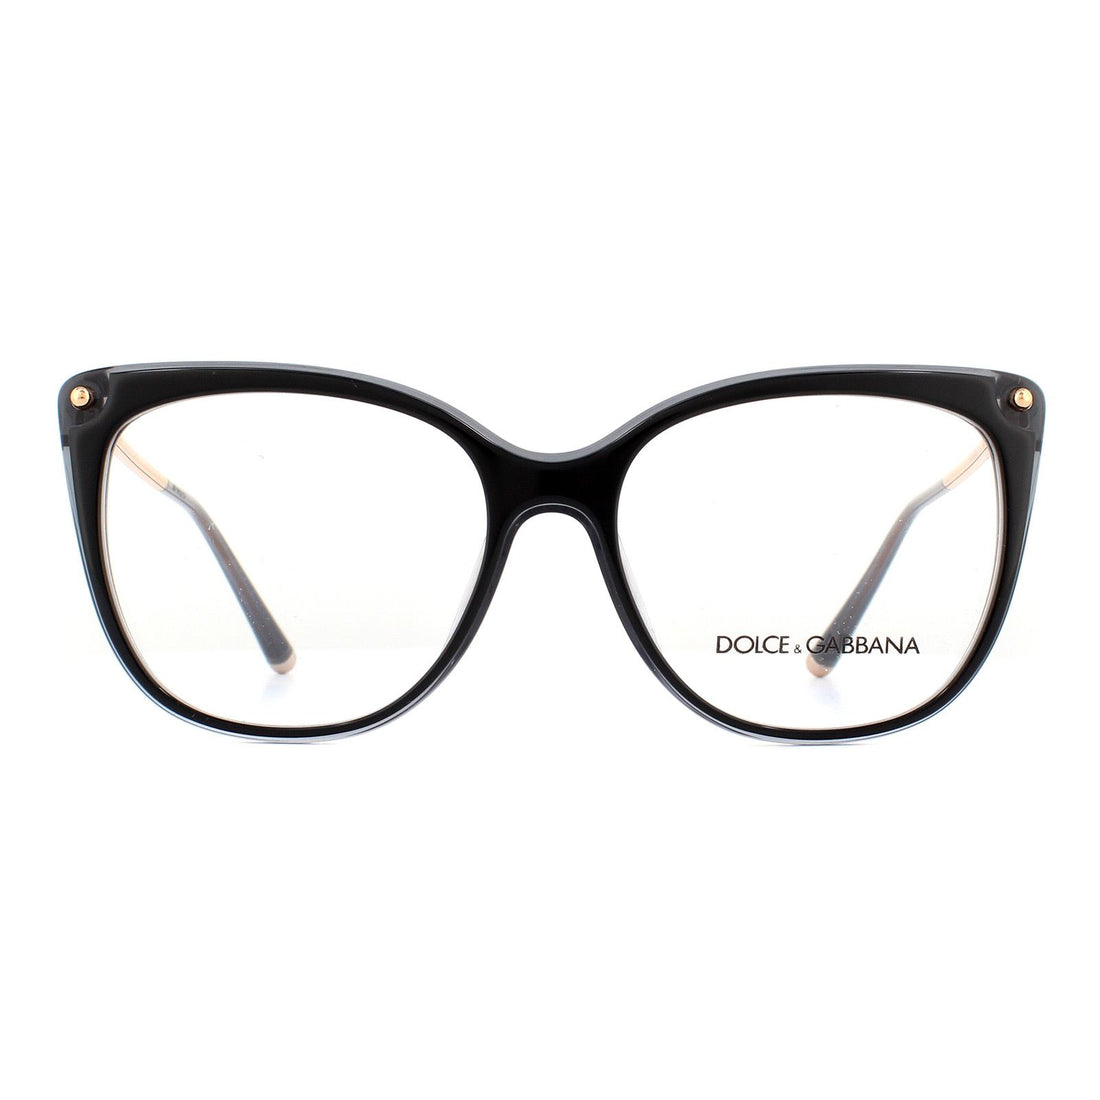 Dolce & Gabbana DG3294 Glasses Frames Top Black On Black Transparent